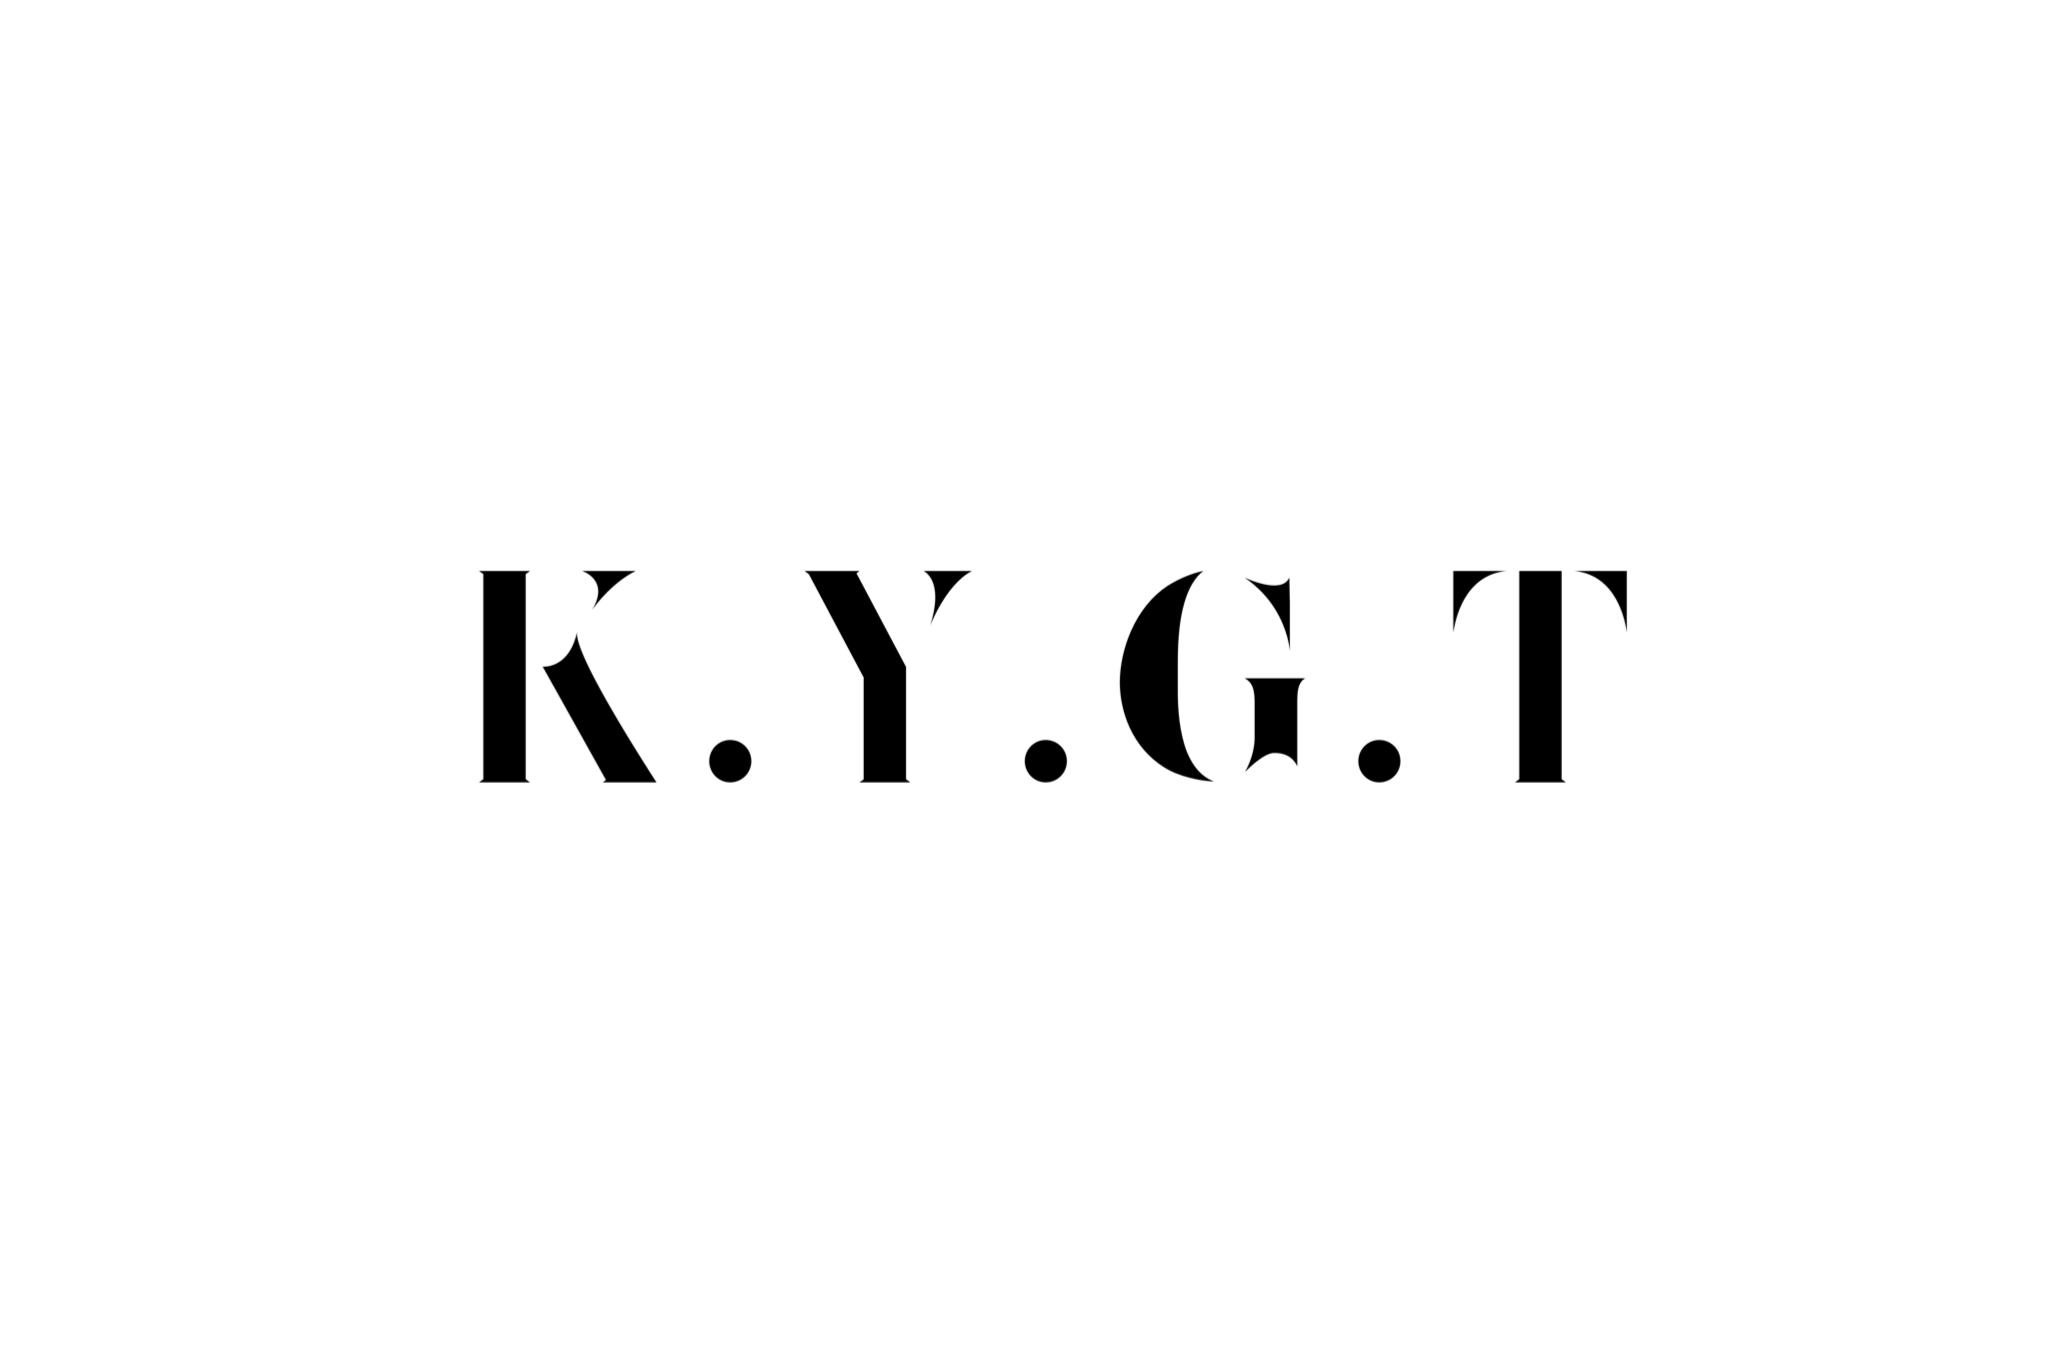 K.Y.G.T